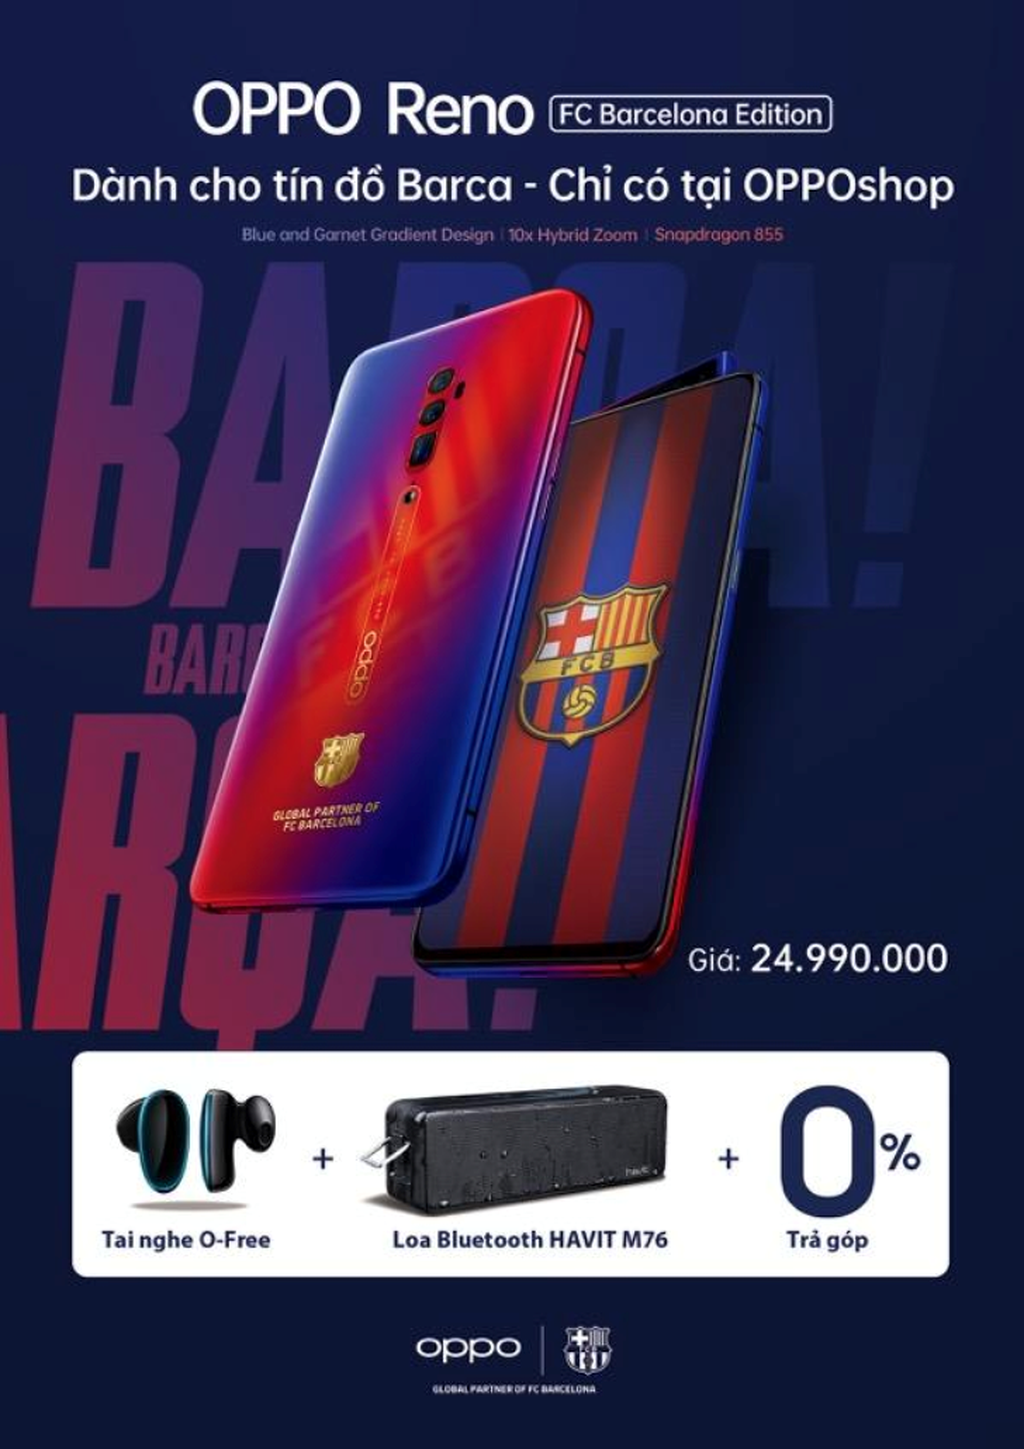 Oppo Reno Zoom 10x bản giới hạn FC Barcelona lên kệ tại Việt Nam giá 25 triệu ảnh 3